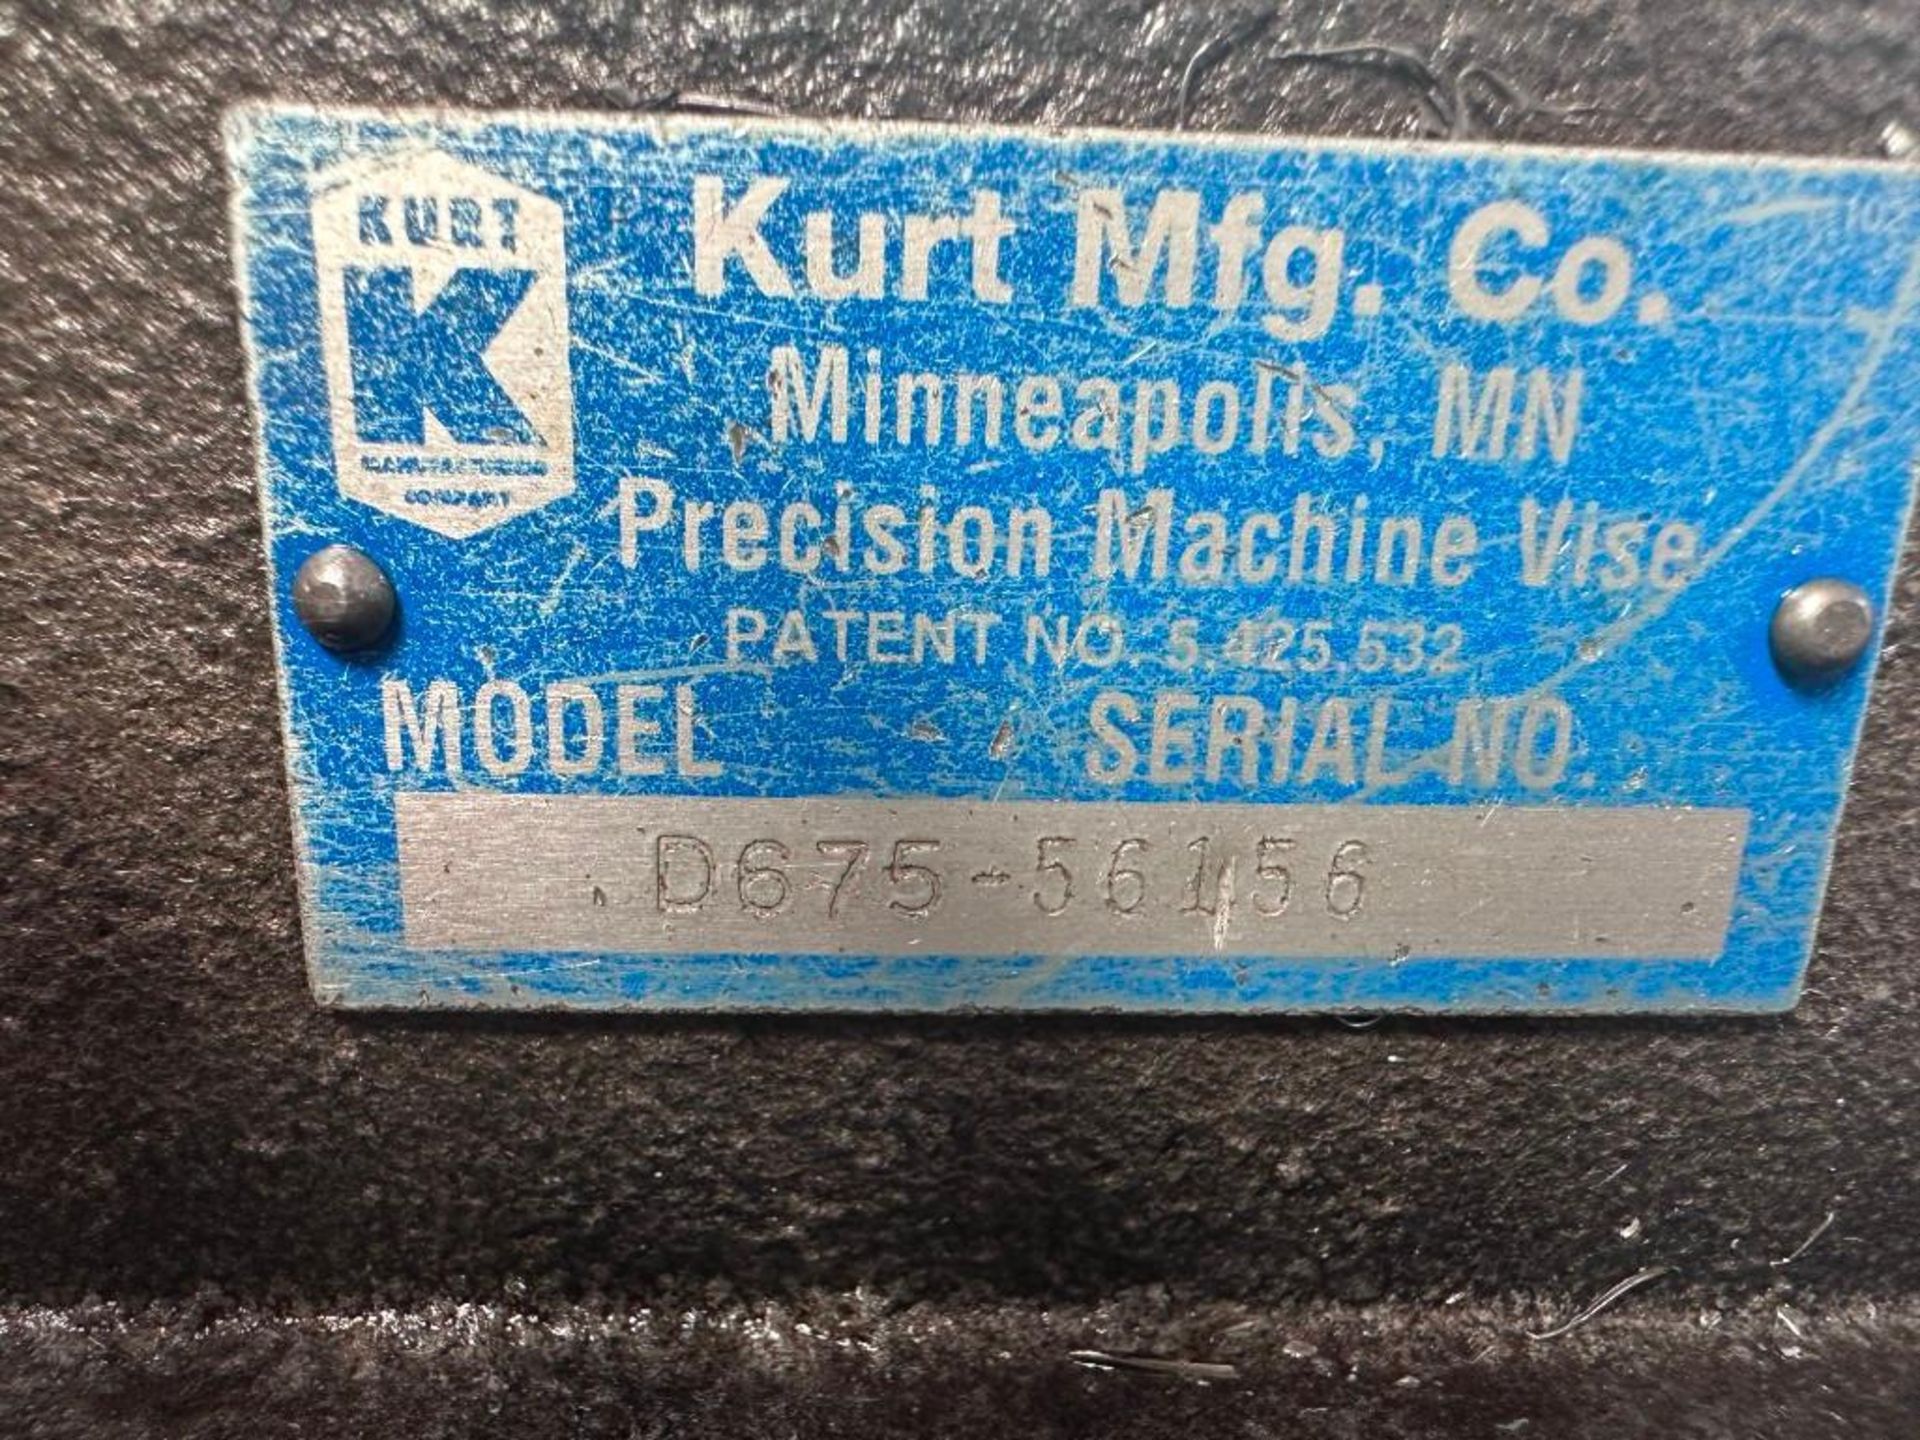 KURT D675 MACHINE VISE 6" - Image 5 of 5